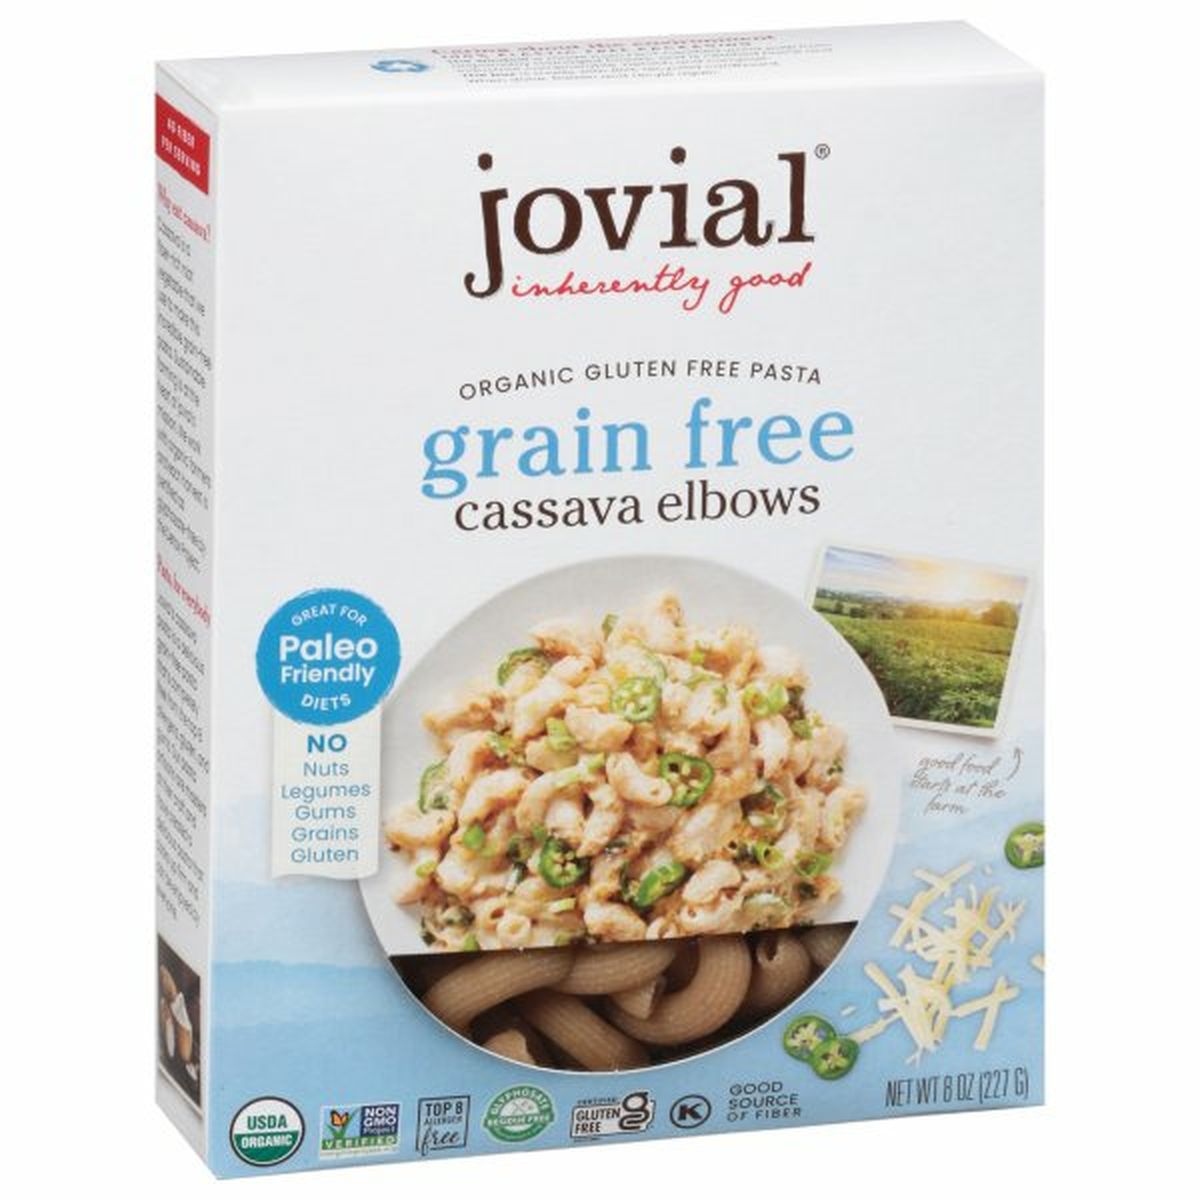 Calories in Jovial Pasta, Cassava Elbows, Grain Free